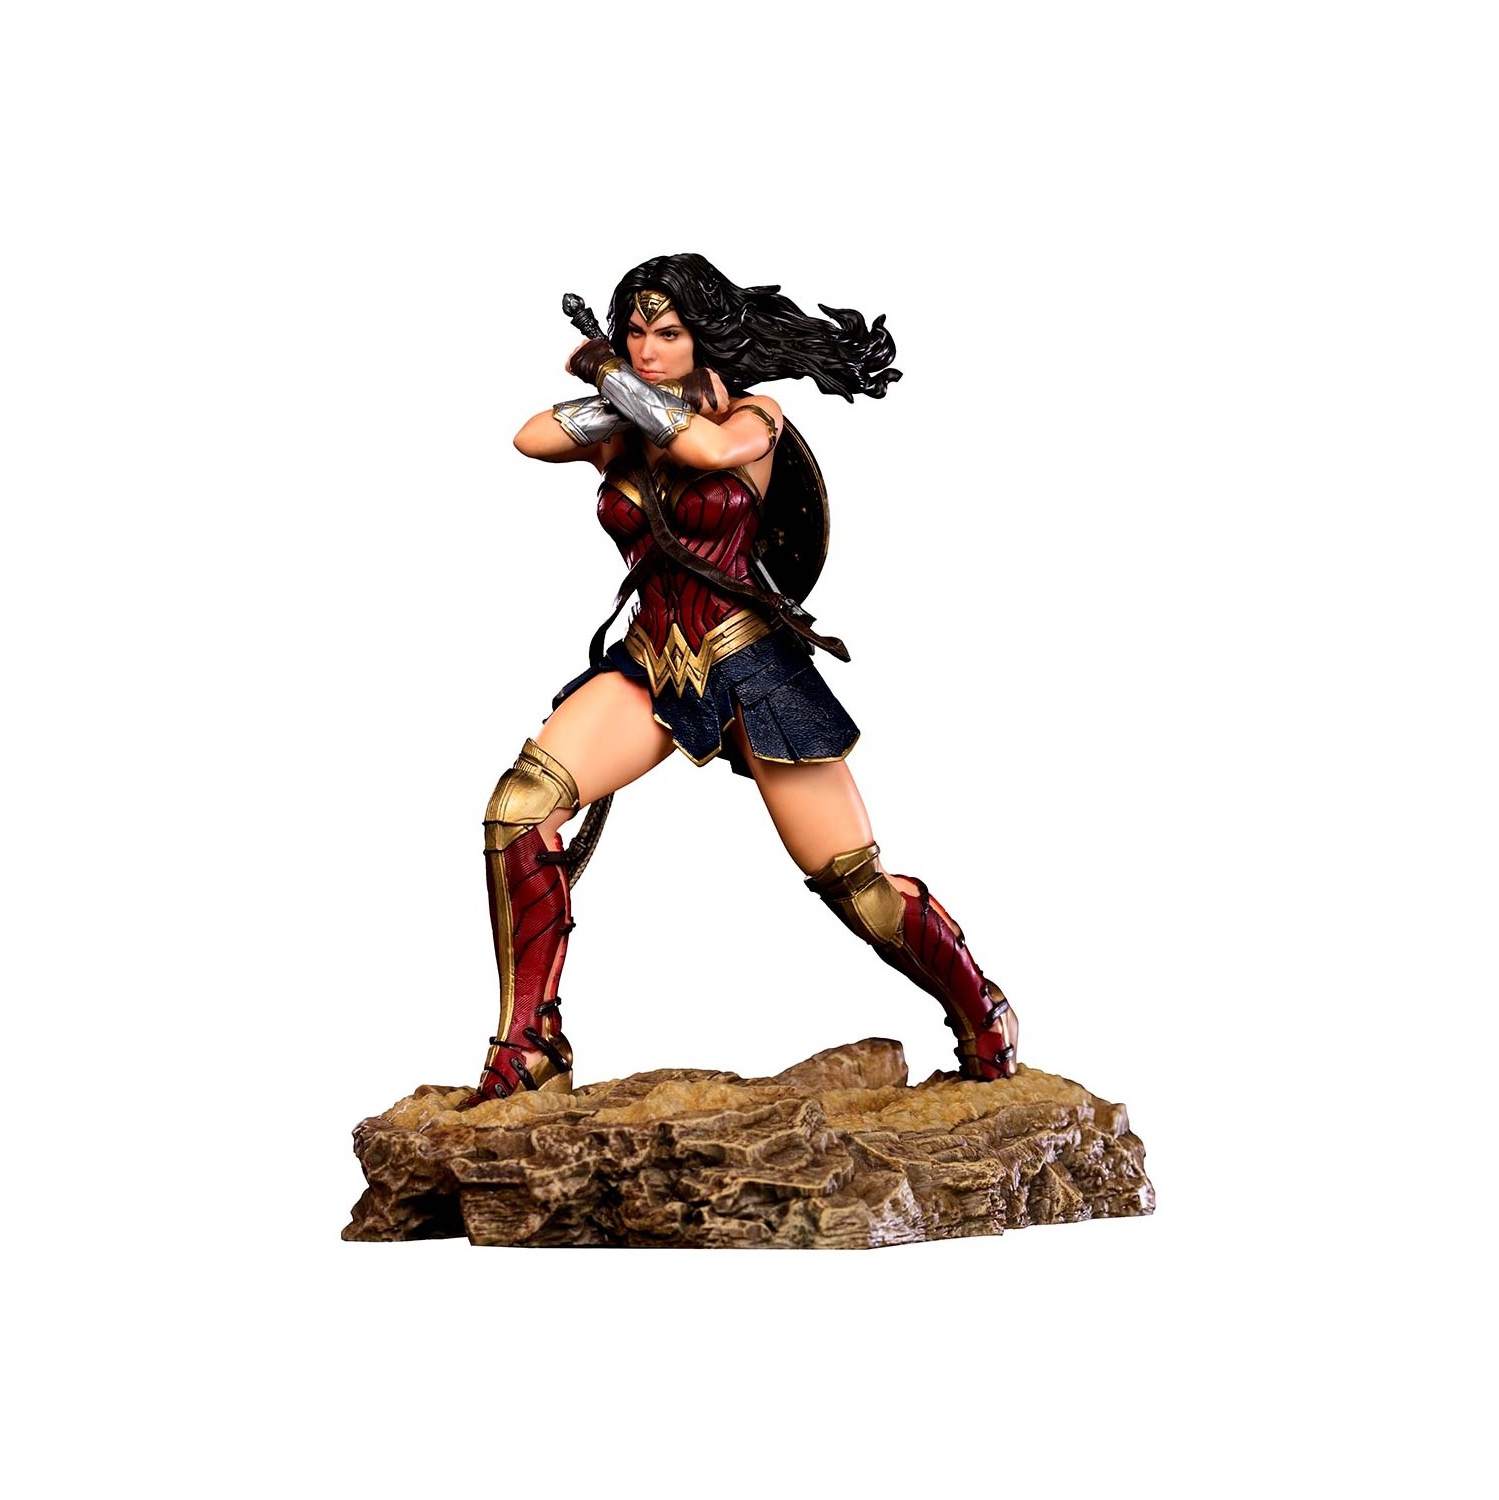 Wonder Woman DC Comics Zack Snyder's Justice League 1:10 Art Scale